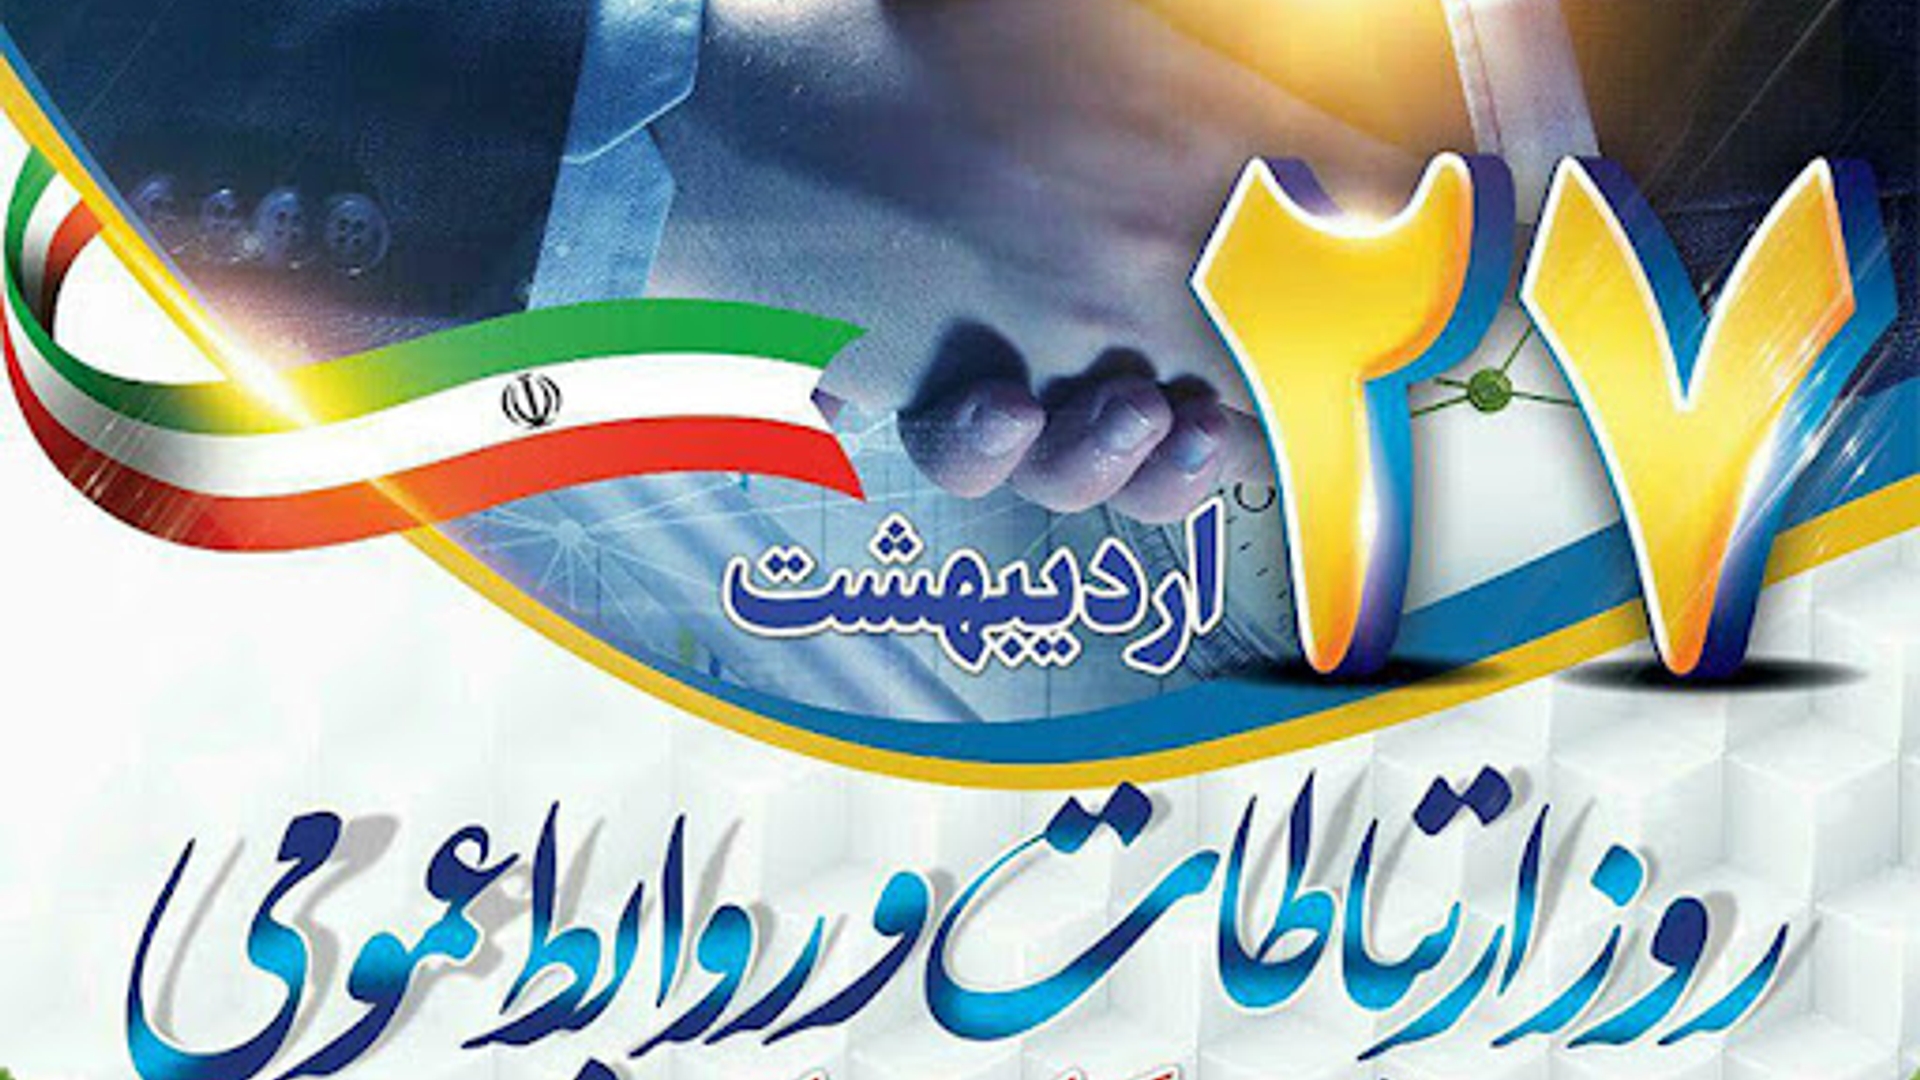 تبریک فرماندار شهرستان فراهان به مناسبت روز روابط عمومی و ارتباطات